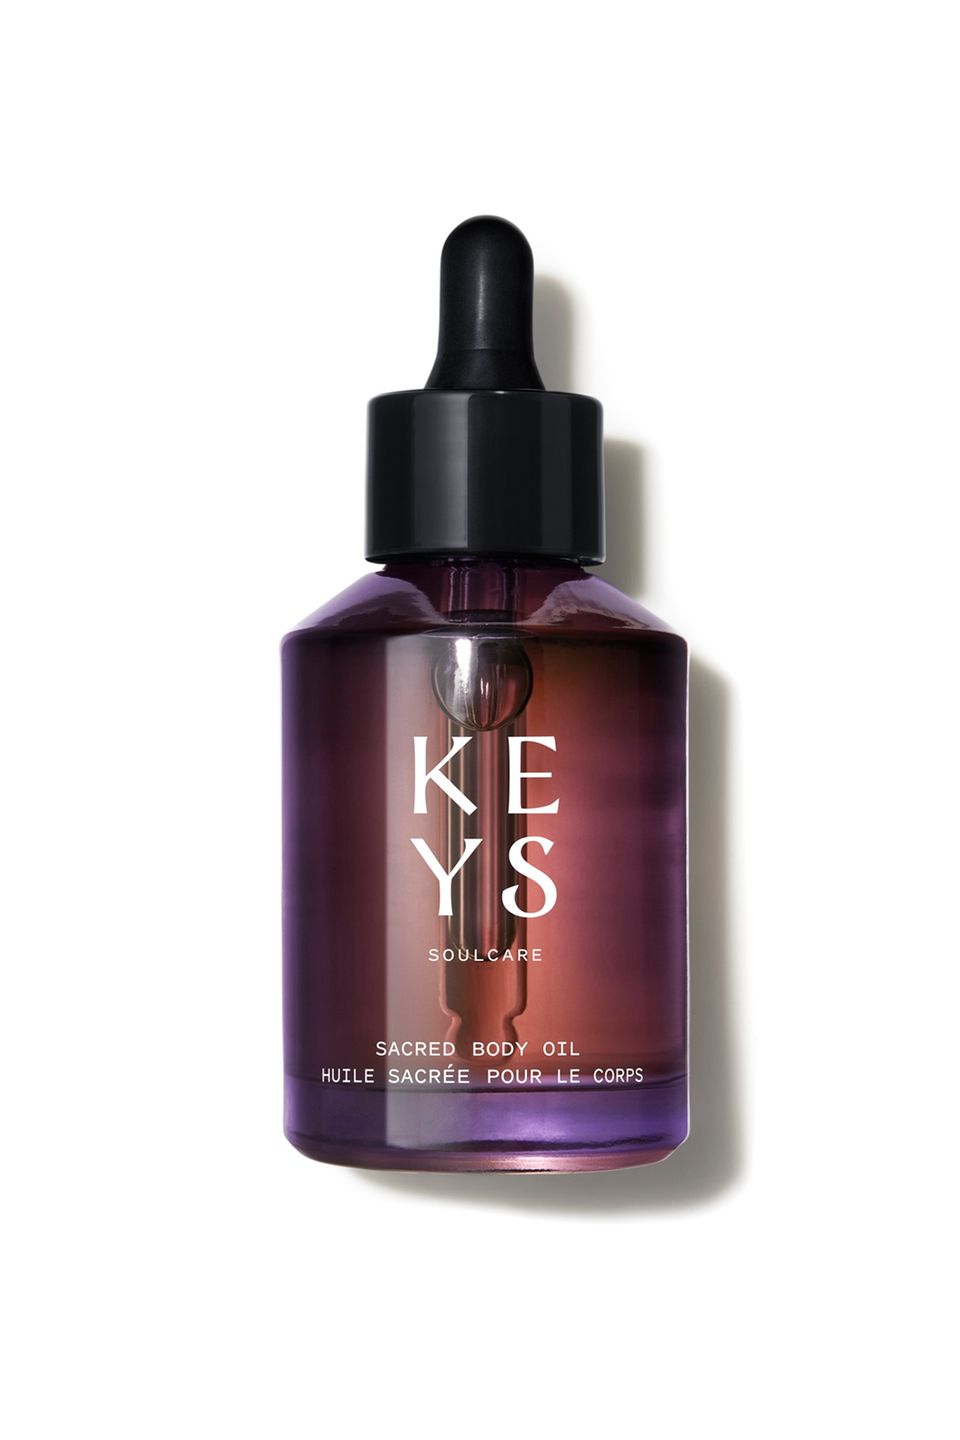 Nach dem erfolgreichen Launch von KEYS Soulcare erweitert Sängerin Alicia Keys ihre Linie um weitere Produkte. Unter anderem dabei: das "Sacred Body Oil", das nicht nur für geschmeidige Haut sorgt, sondern auch perfekt zur Massage für den ultimativen Spa-Moment verwendet werden kann. Von Keys Soulcare, ca. 27 Euro.